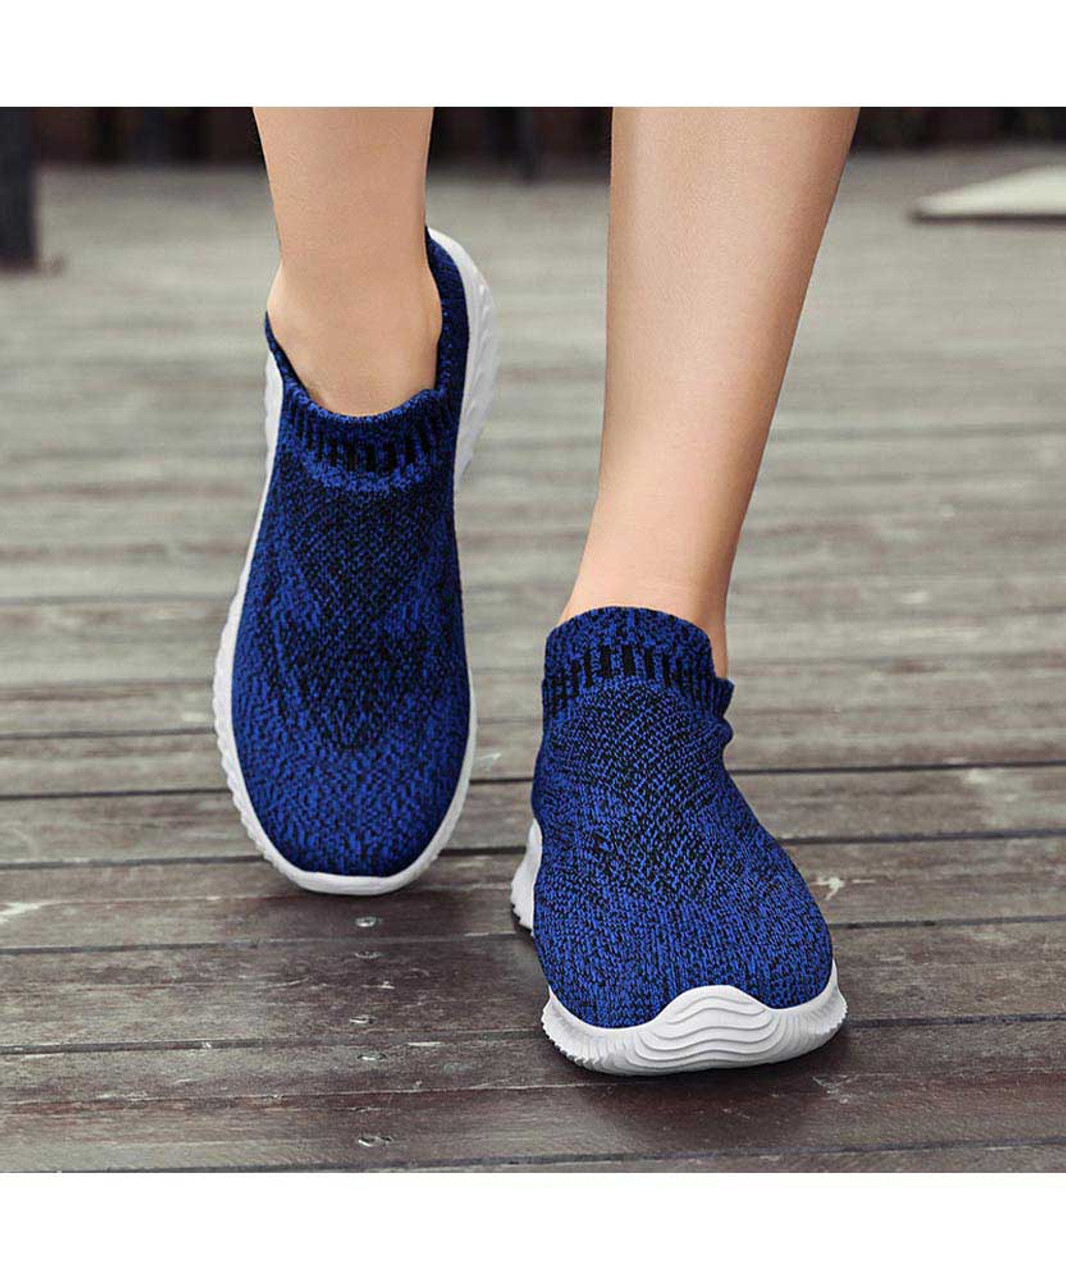 Blue pattern texture flyknit slip on shoe sneaker | Womens sneakers ...